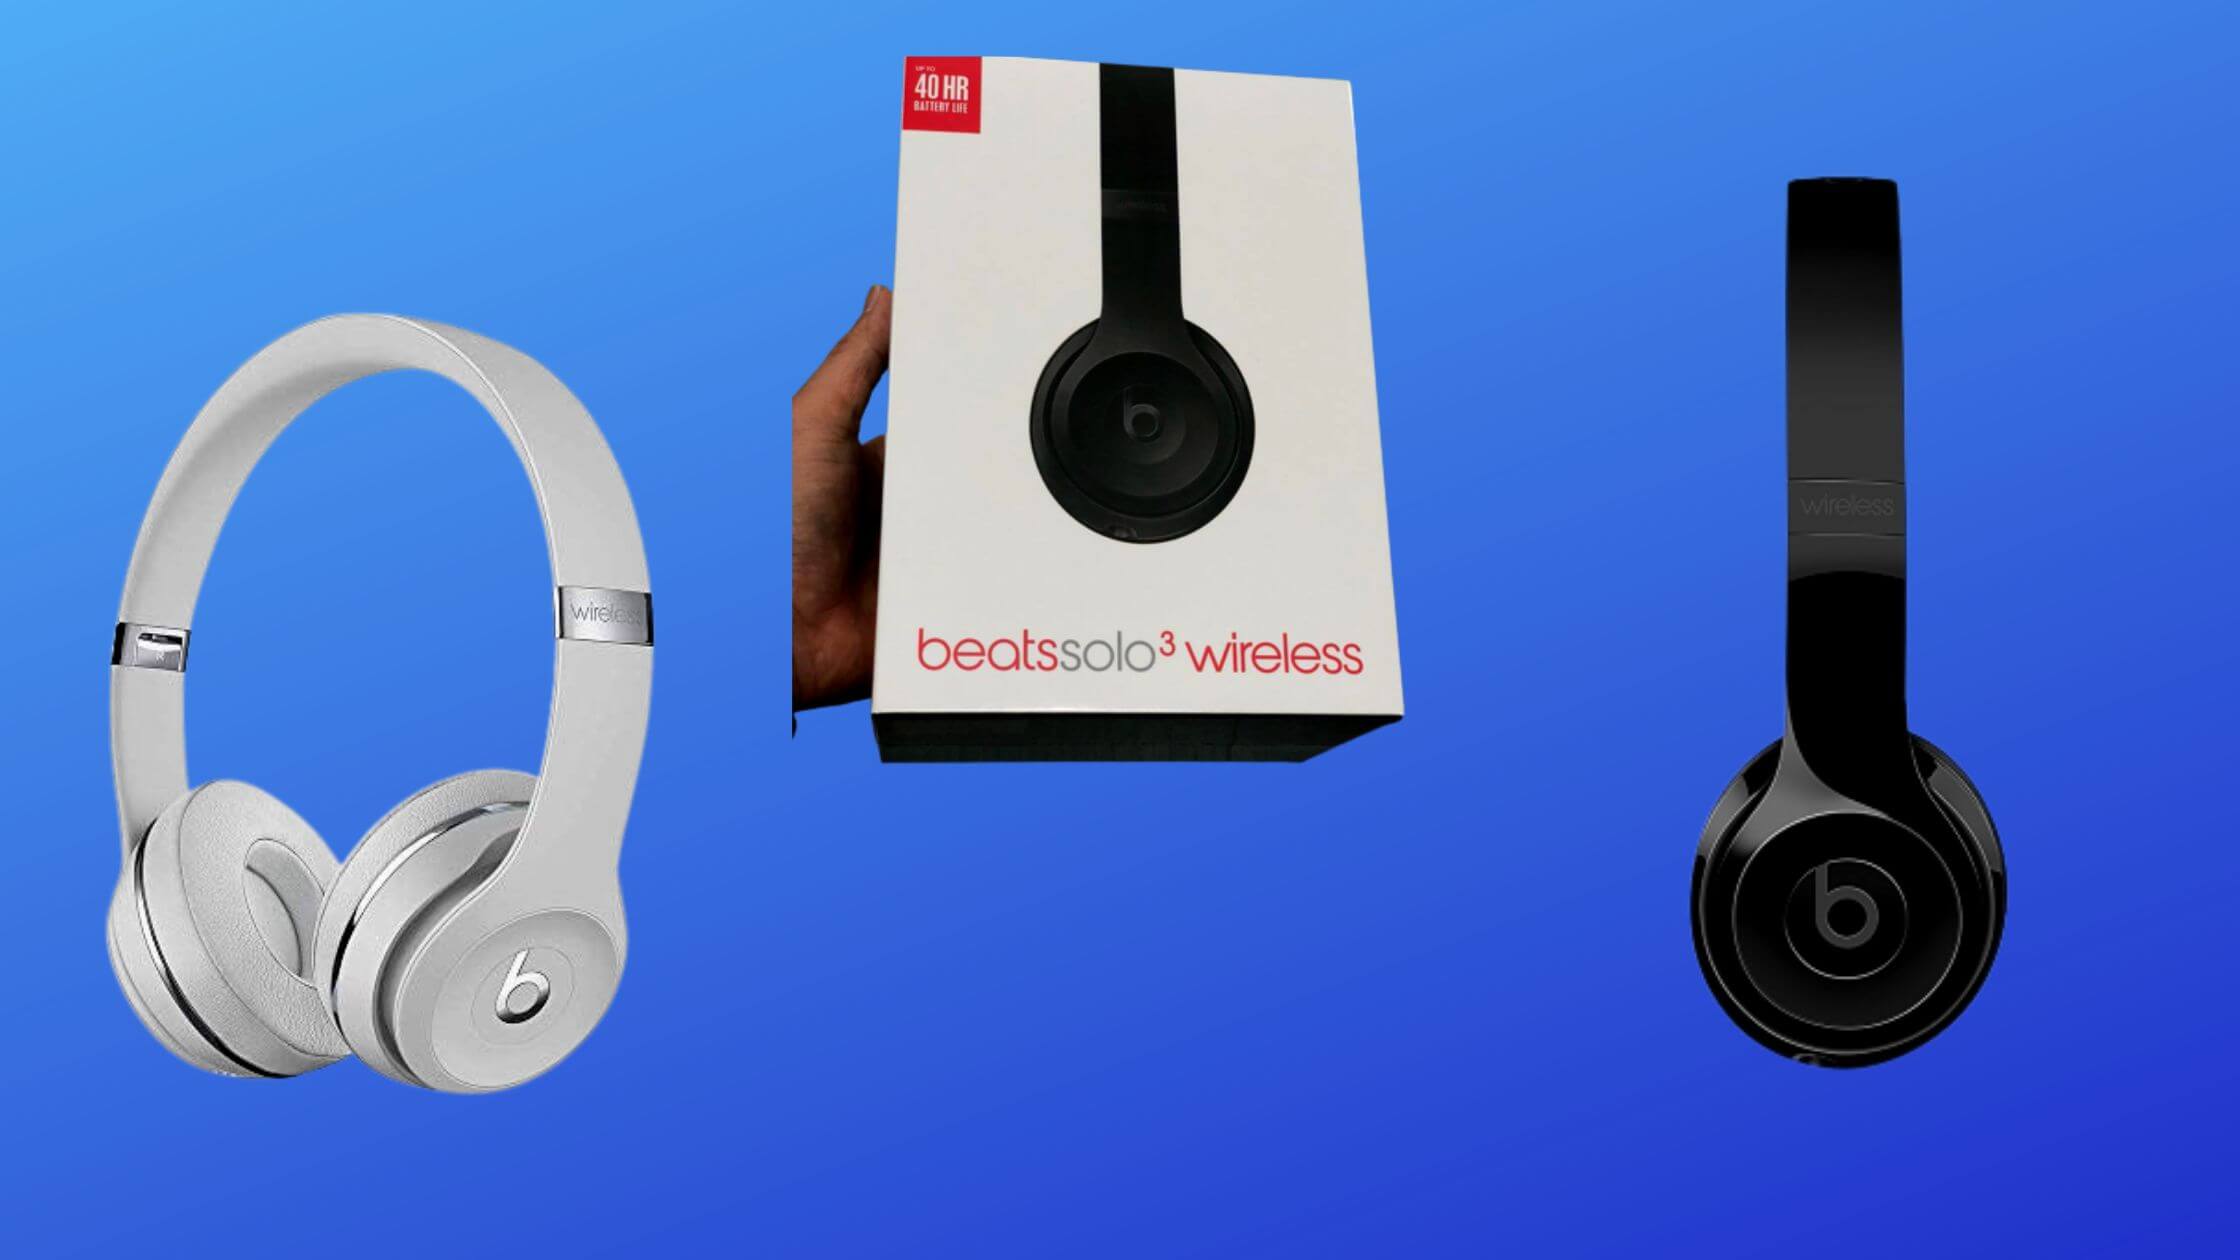 Beats Solo 3 True Wireless On-Ear Headphones Are On Sale